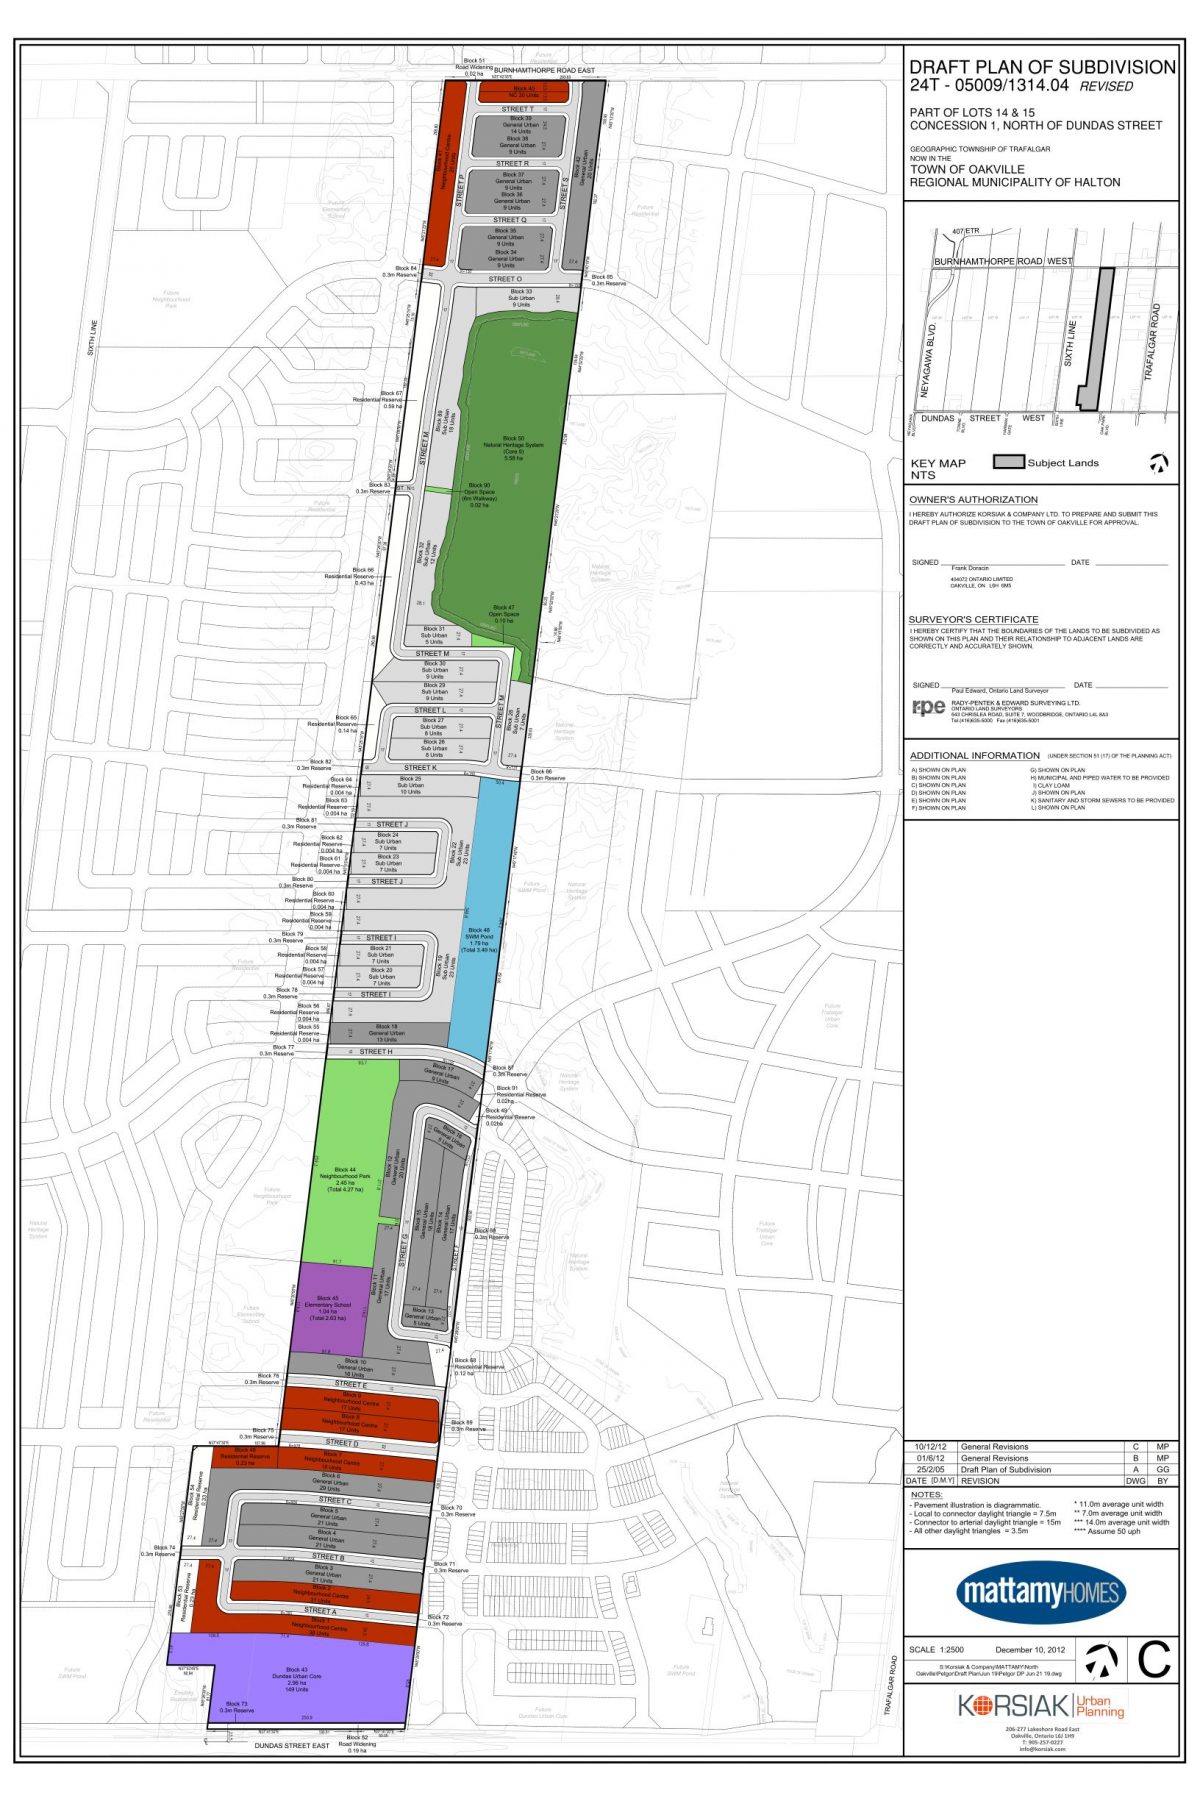 Korsiak Urban Planning - Oakville Portfolio - Dundas Street West, Greenfield, Mixed Use Development - Oakville, Ontario